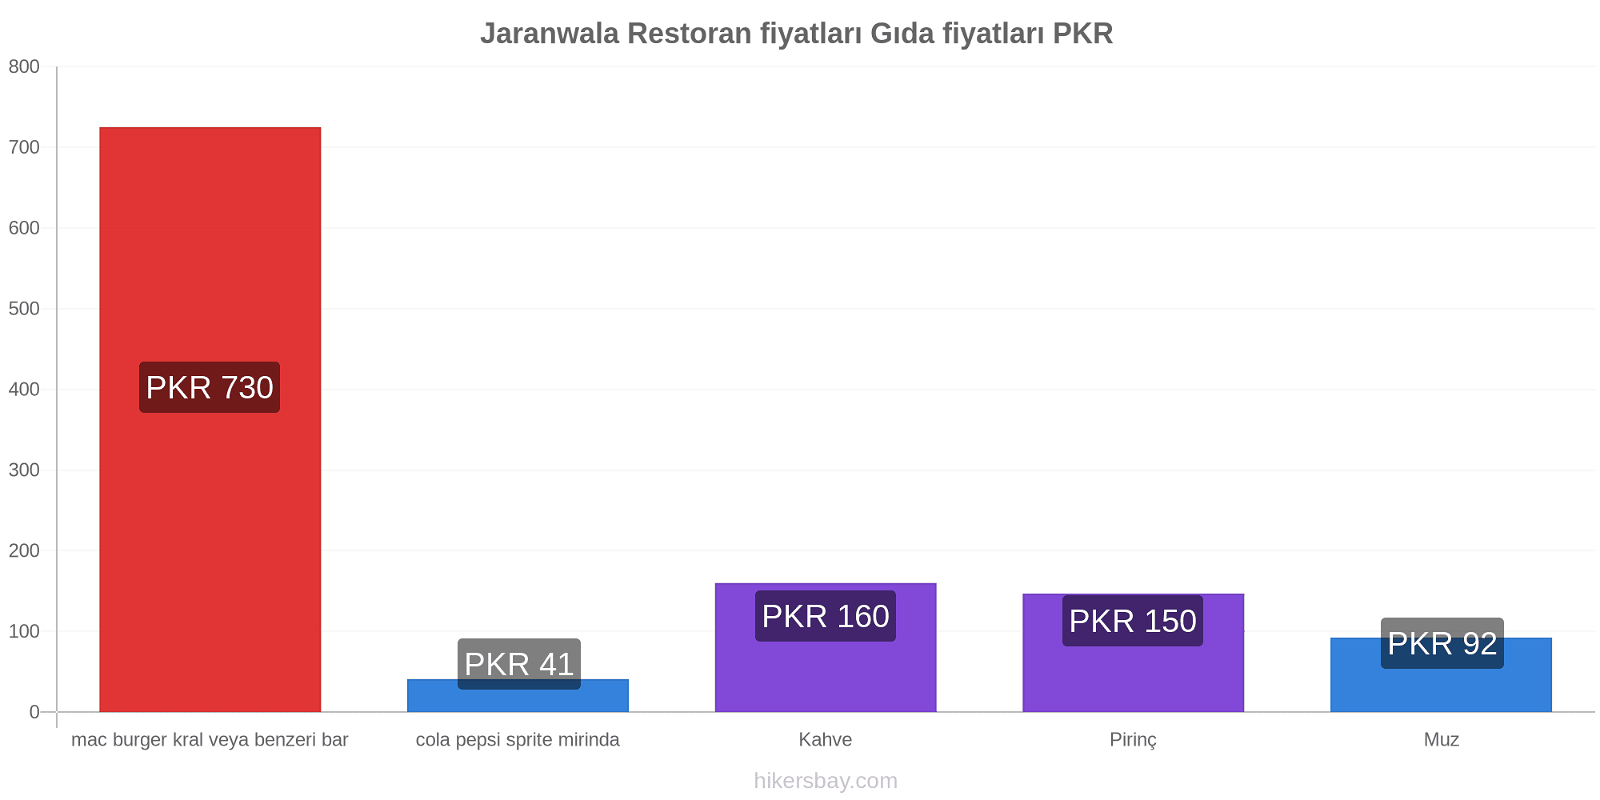 Jaranwala fiyat değişiklikleri hikersbay.com